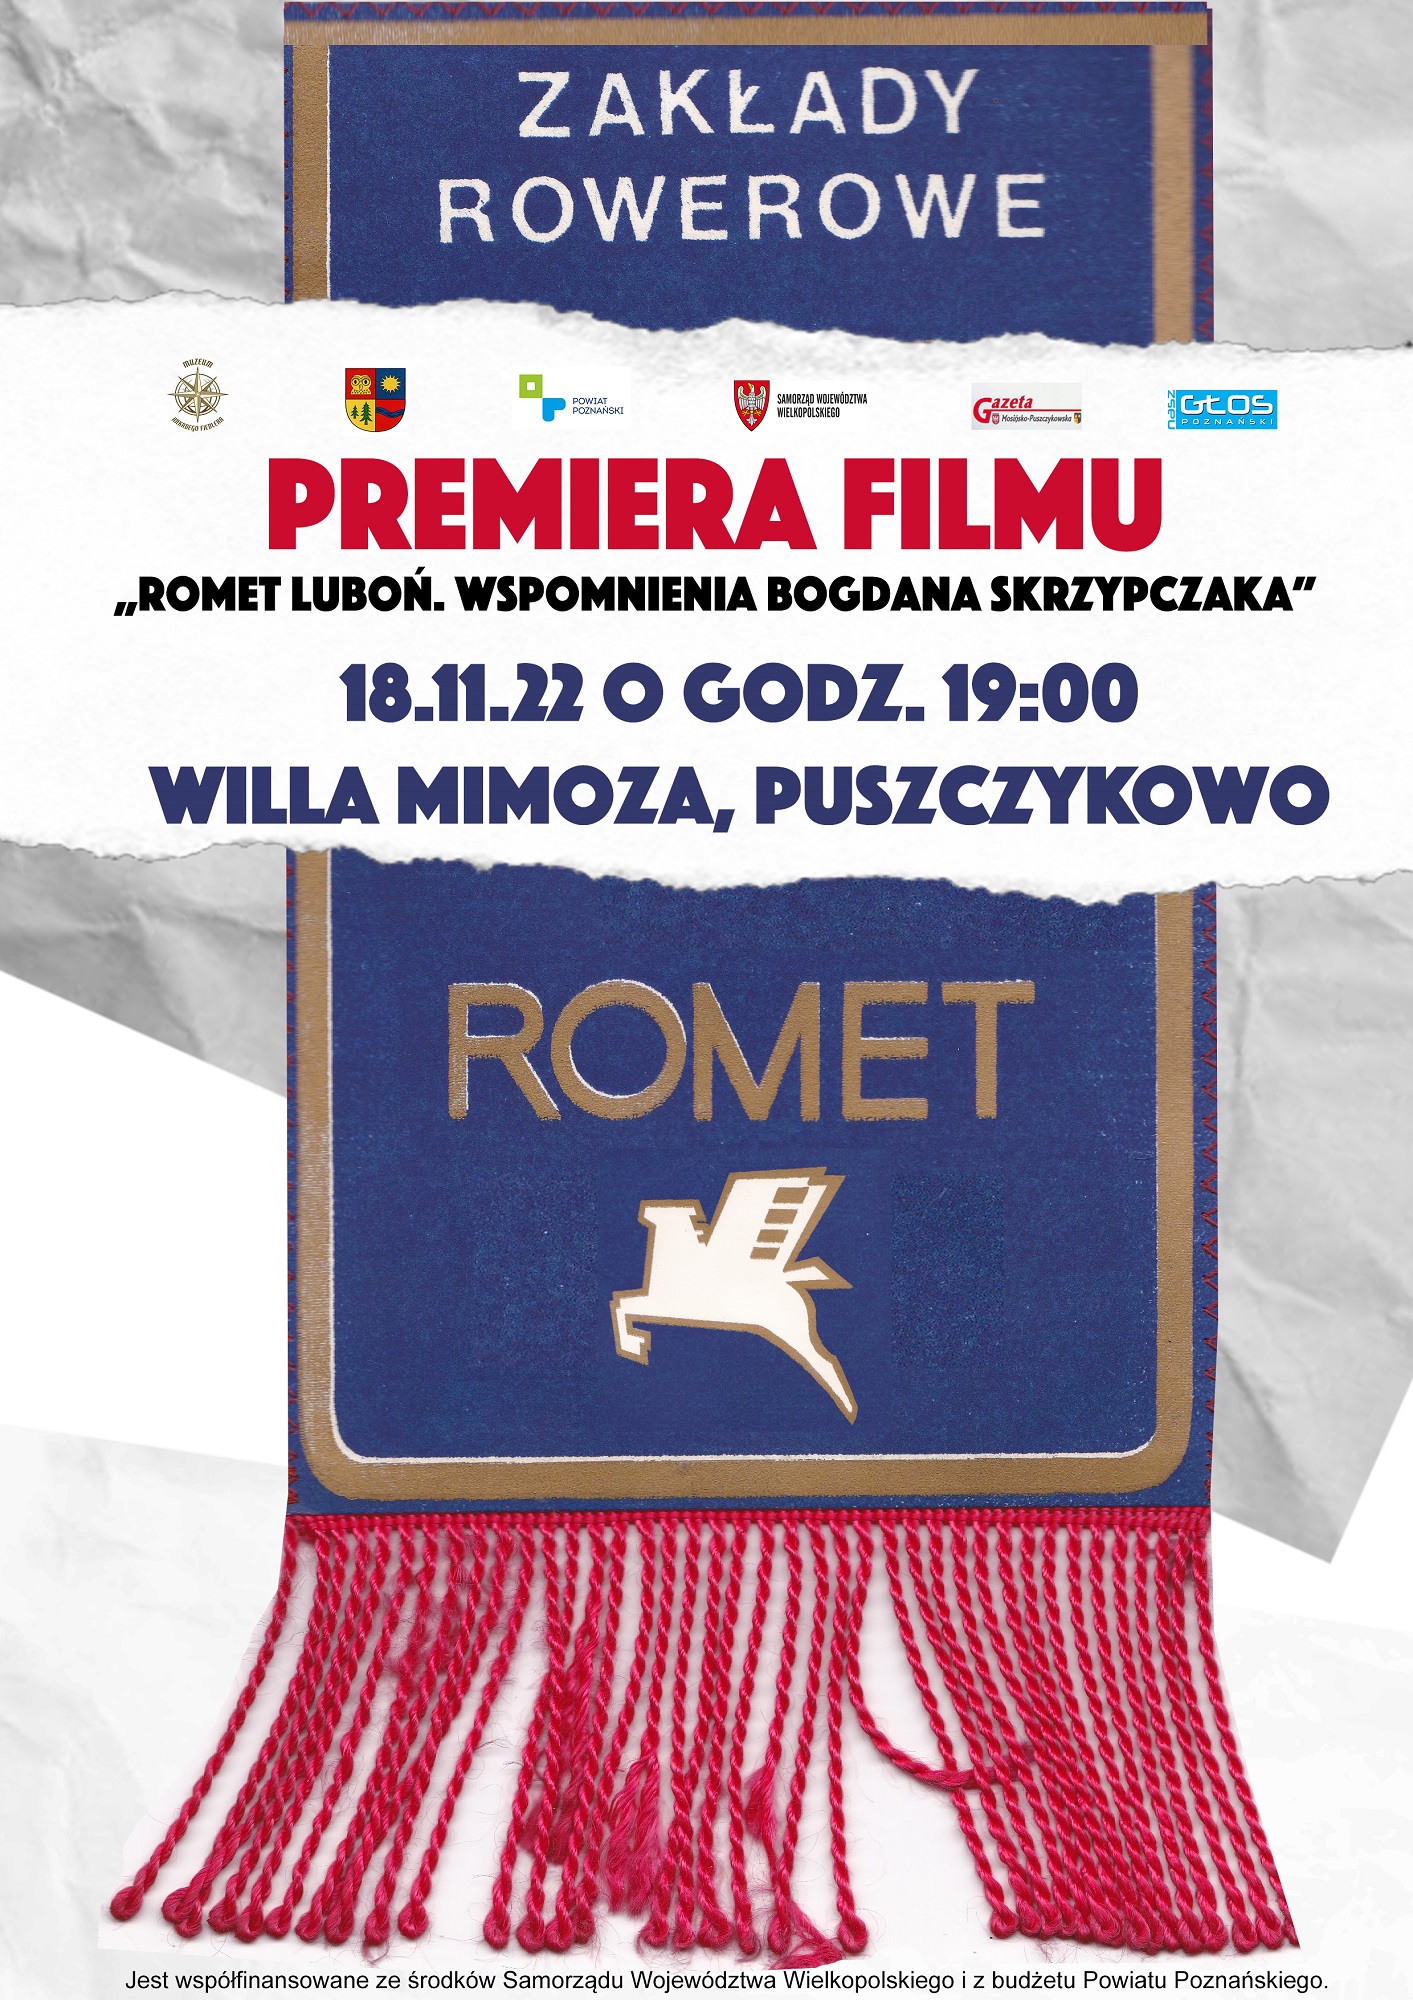 Serdecznie zapraszamy na premierę filmu pt. ”Romet Luboń. Wspomnienia Bogdana Skrzypczaka”.